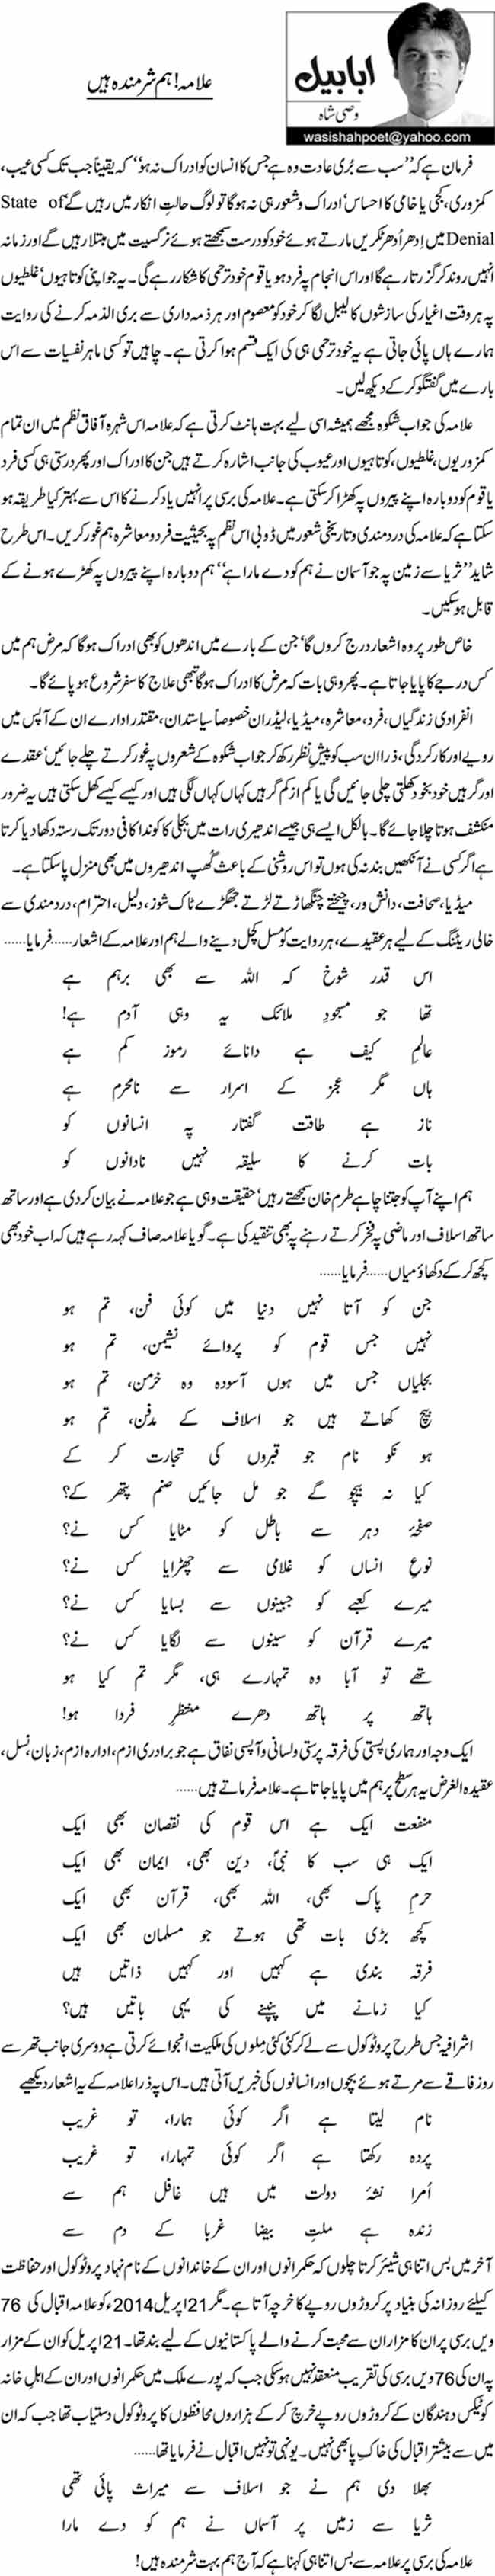 Alama hum sharminda hen By Wasi Shah